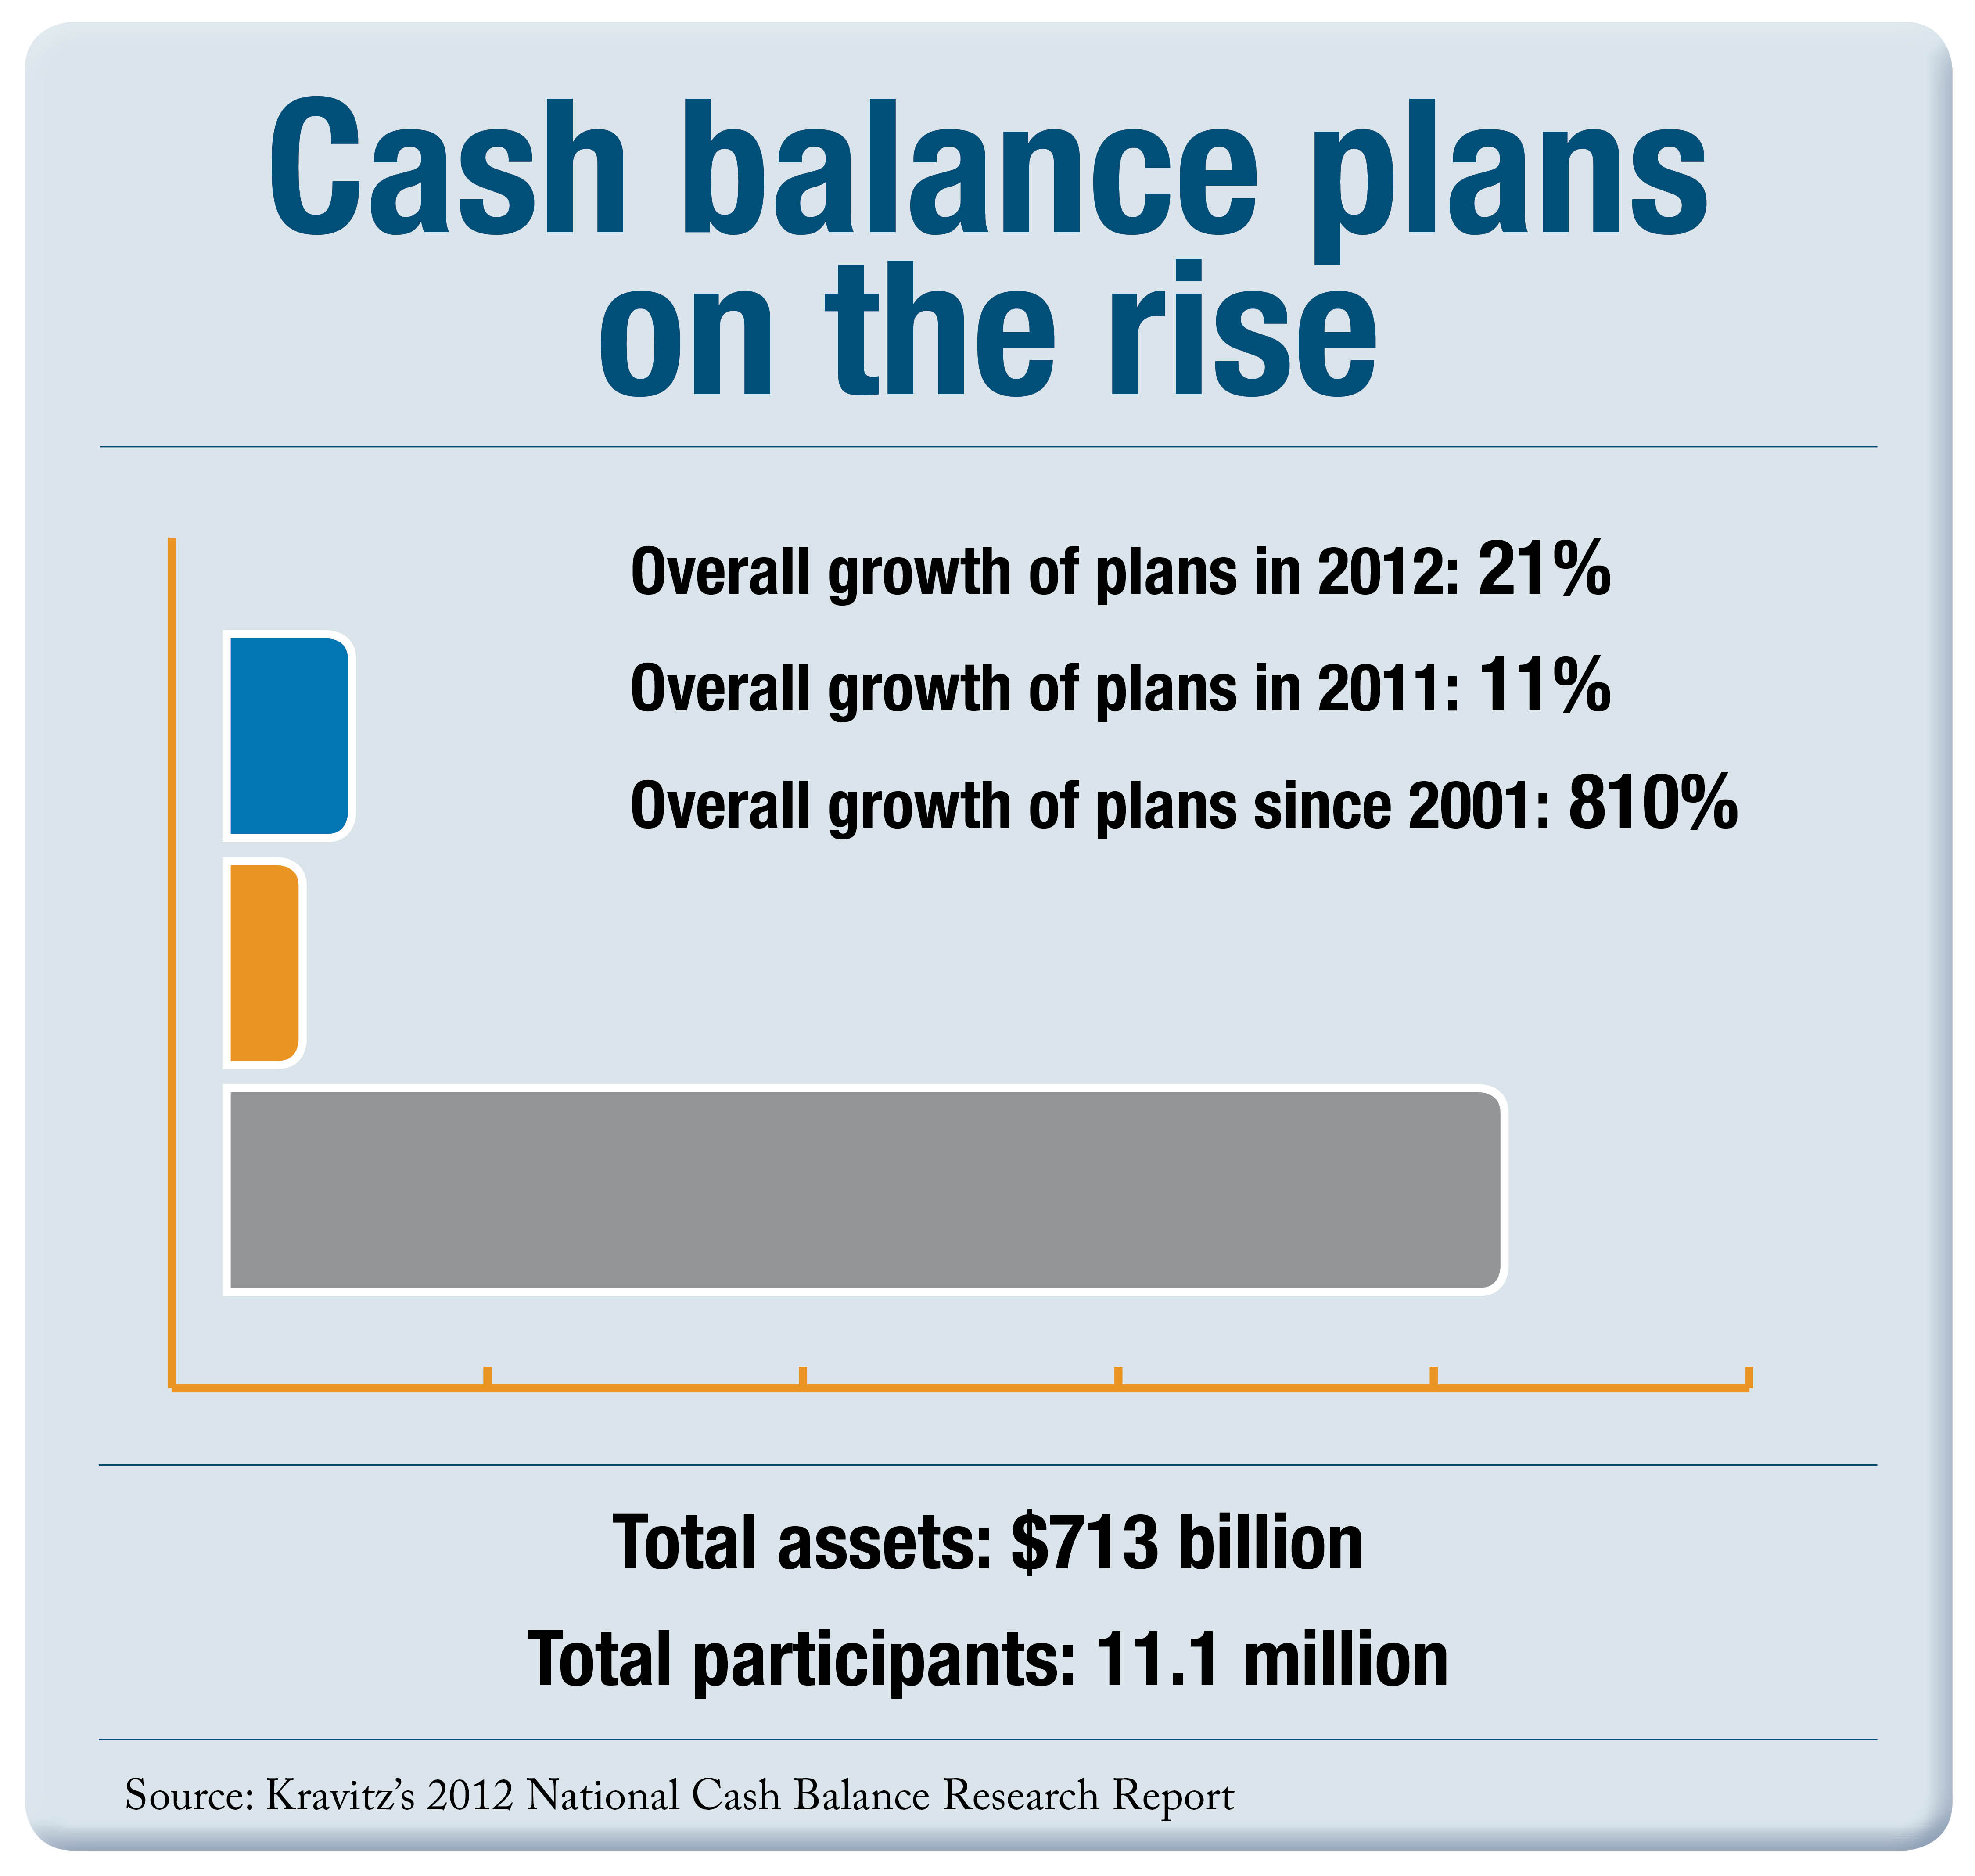 Cash balance plans